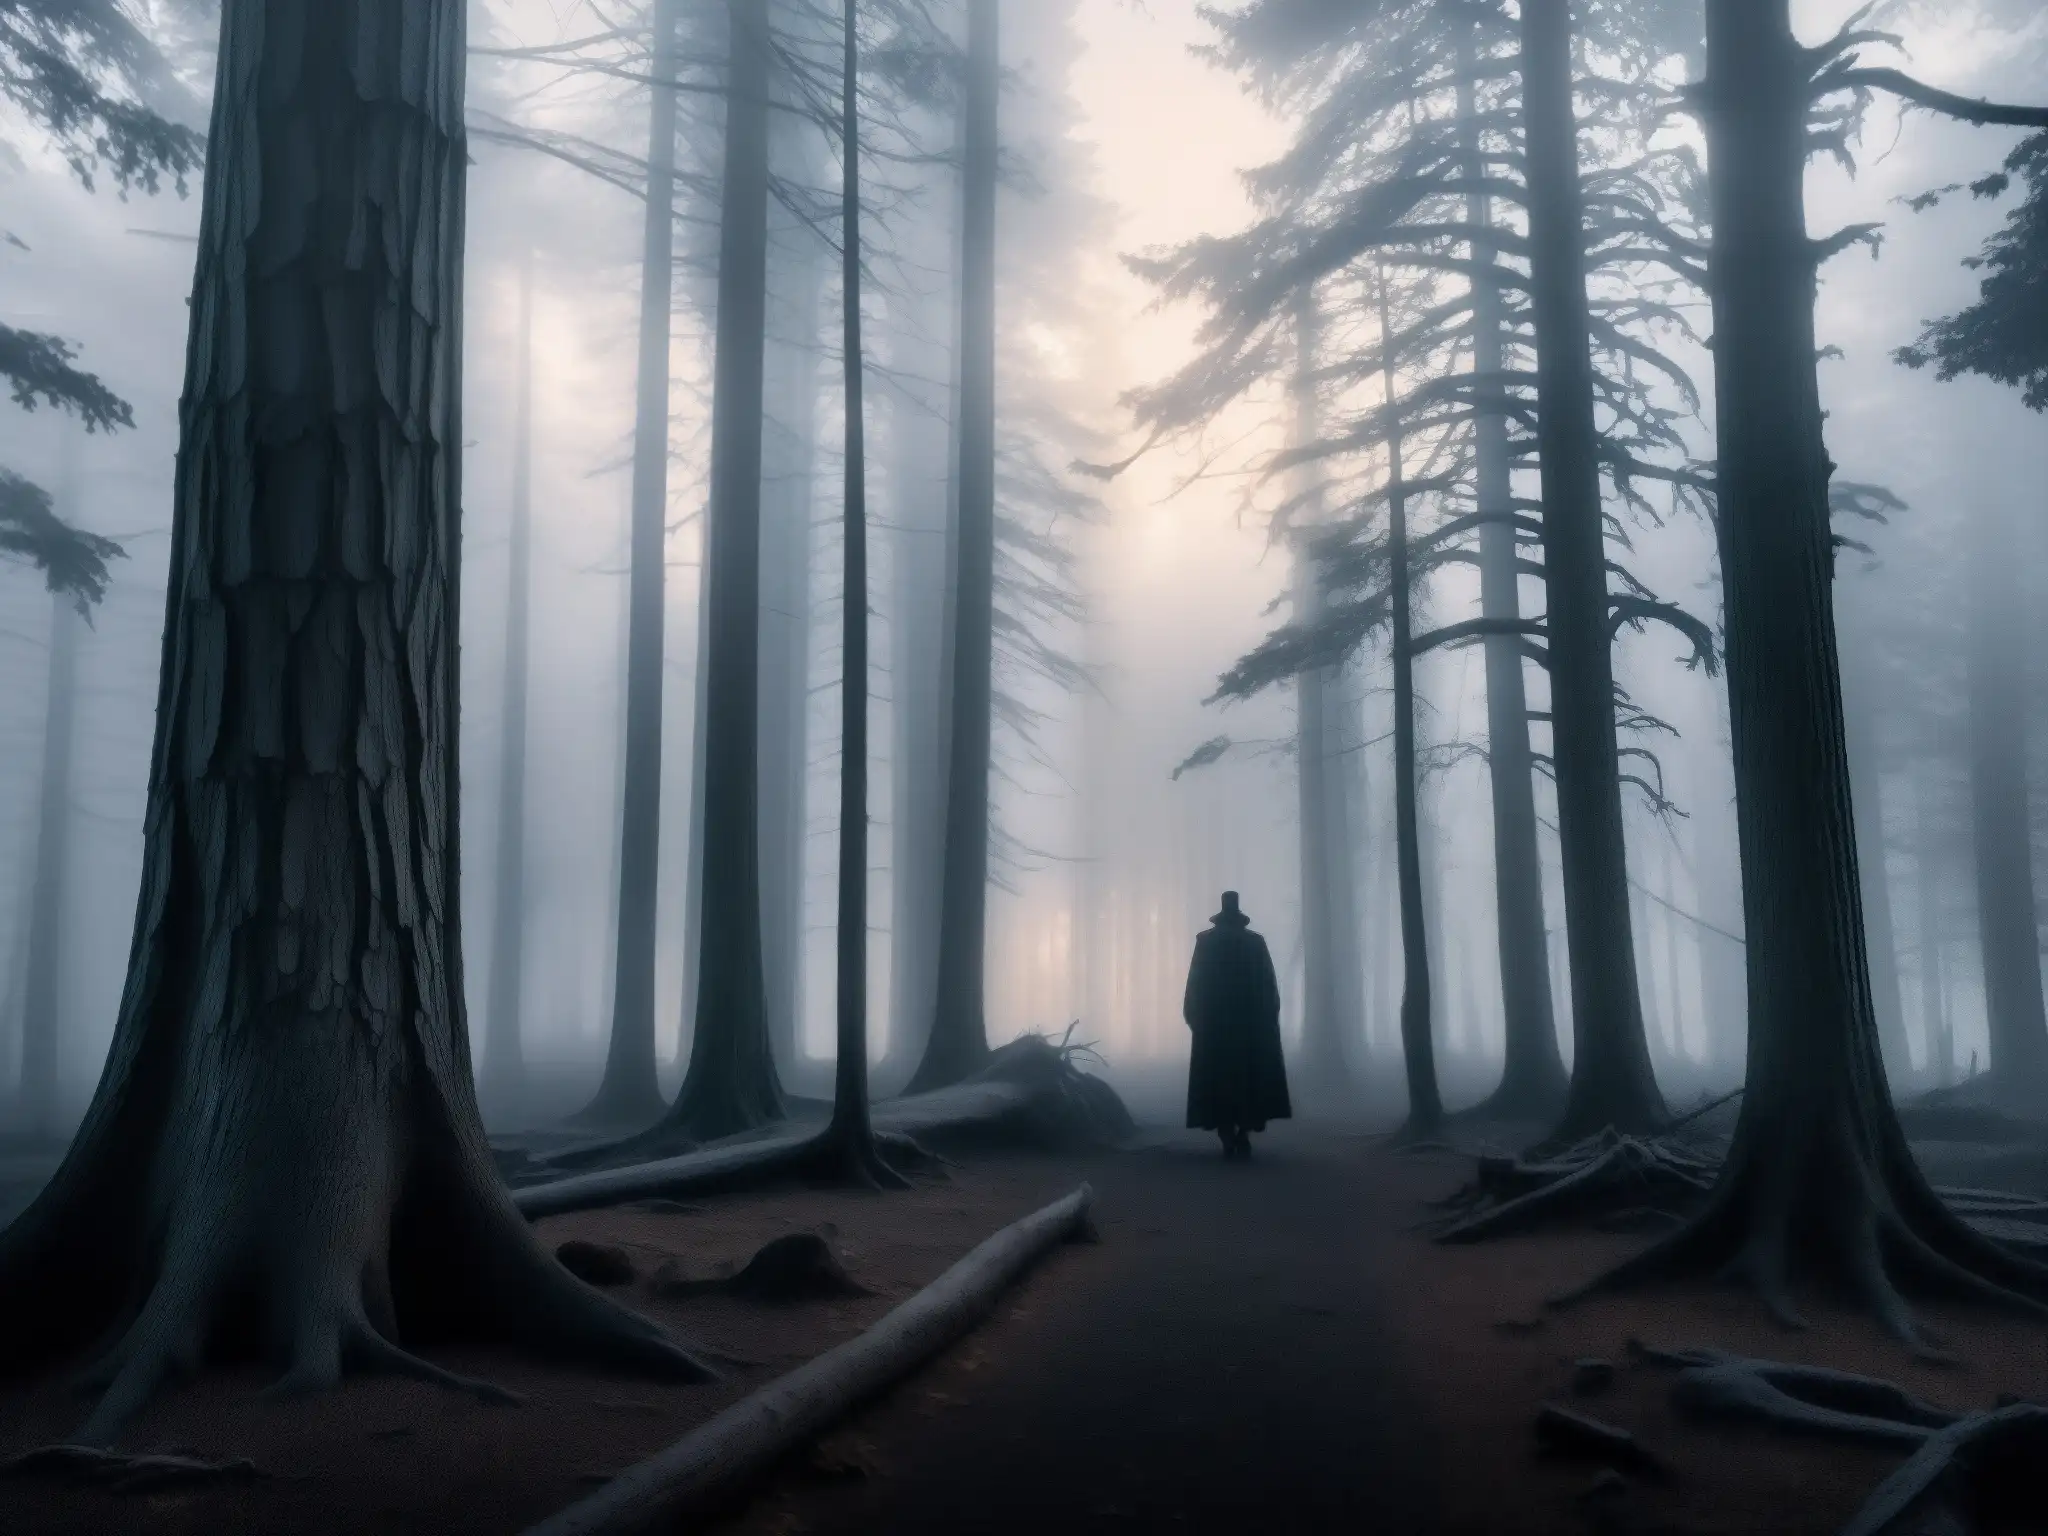 Un bosque misterioso y neblinoso al atardecer, con árboles retorcidos y sombras tenebrosas que generan inquietud